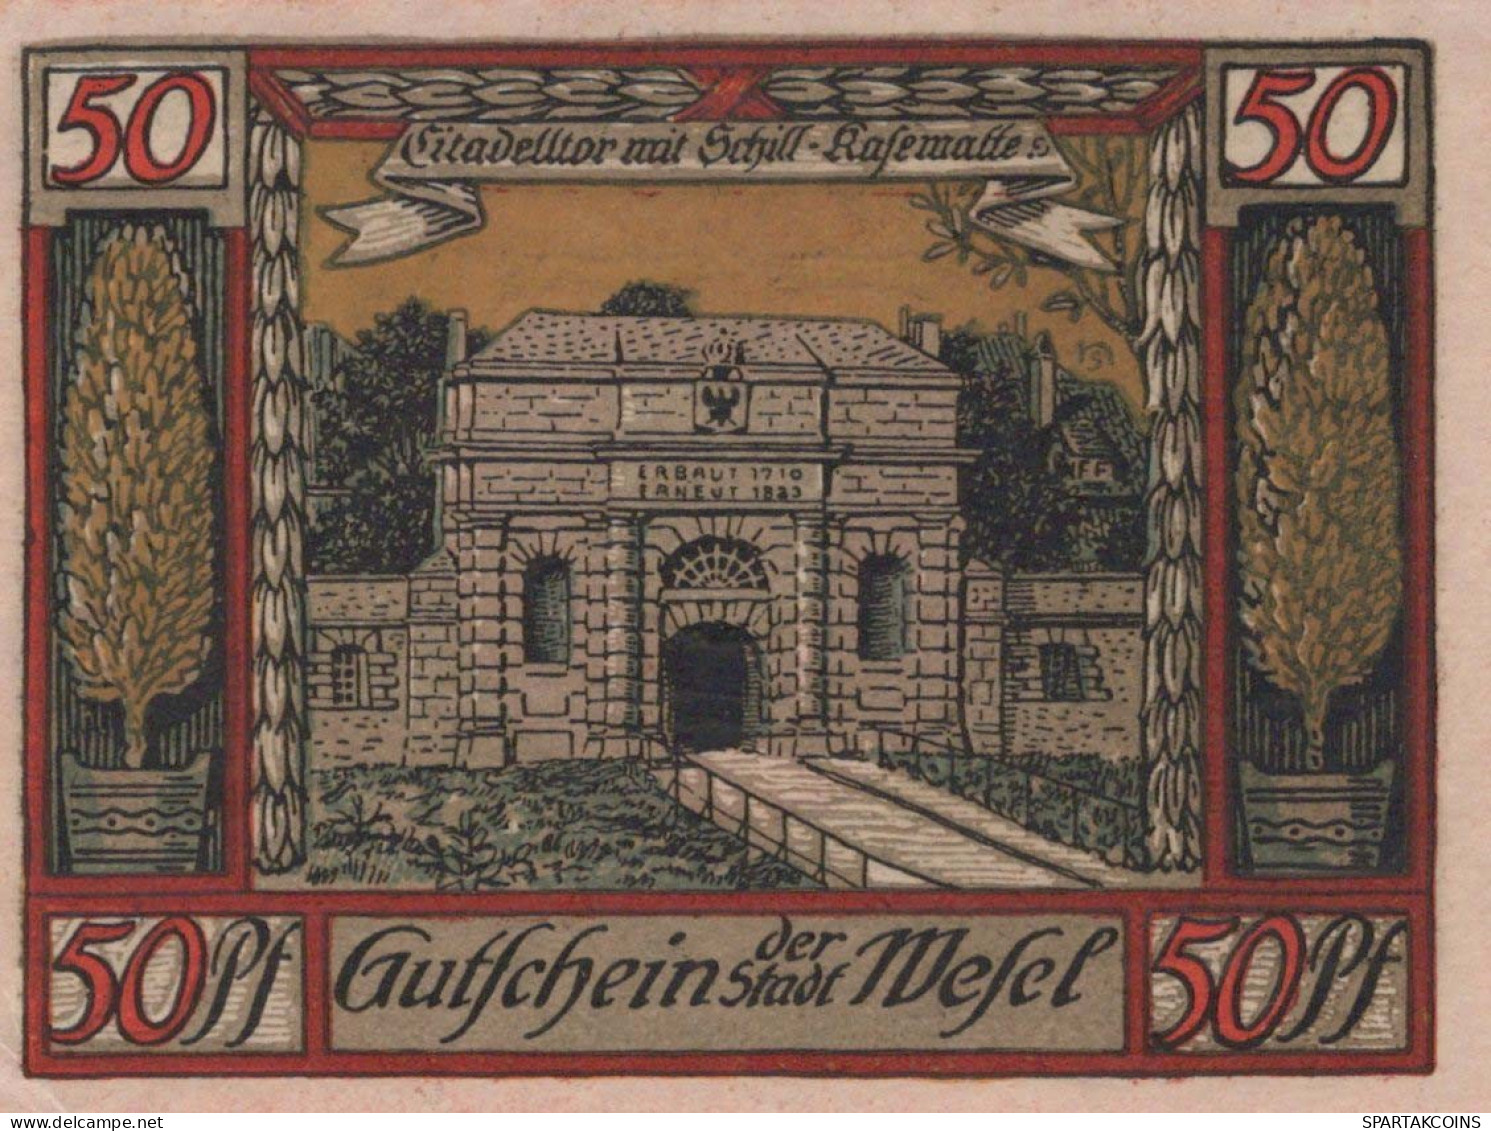 50 PFENNIG 1921 Stadt WESEL Rhine UNC DEUTSCHLAND Notgeld Banknote #PH611 - [11] Local Banknote Issues